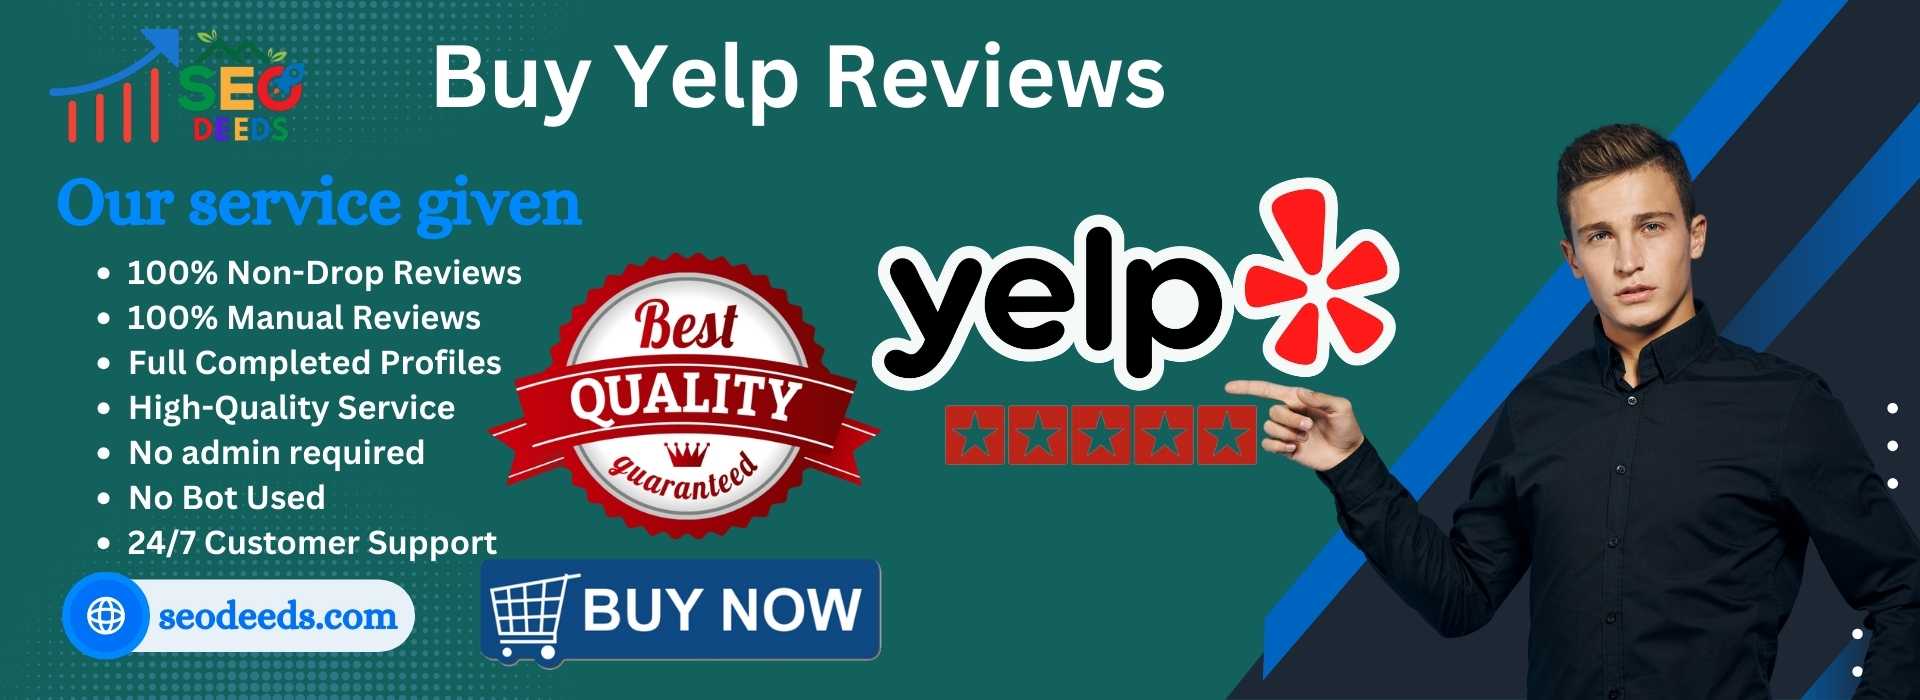 Buy Yelp Reviews1